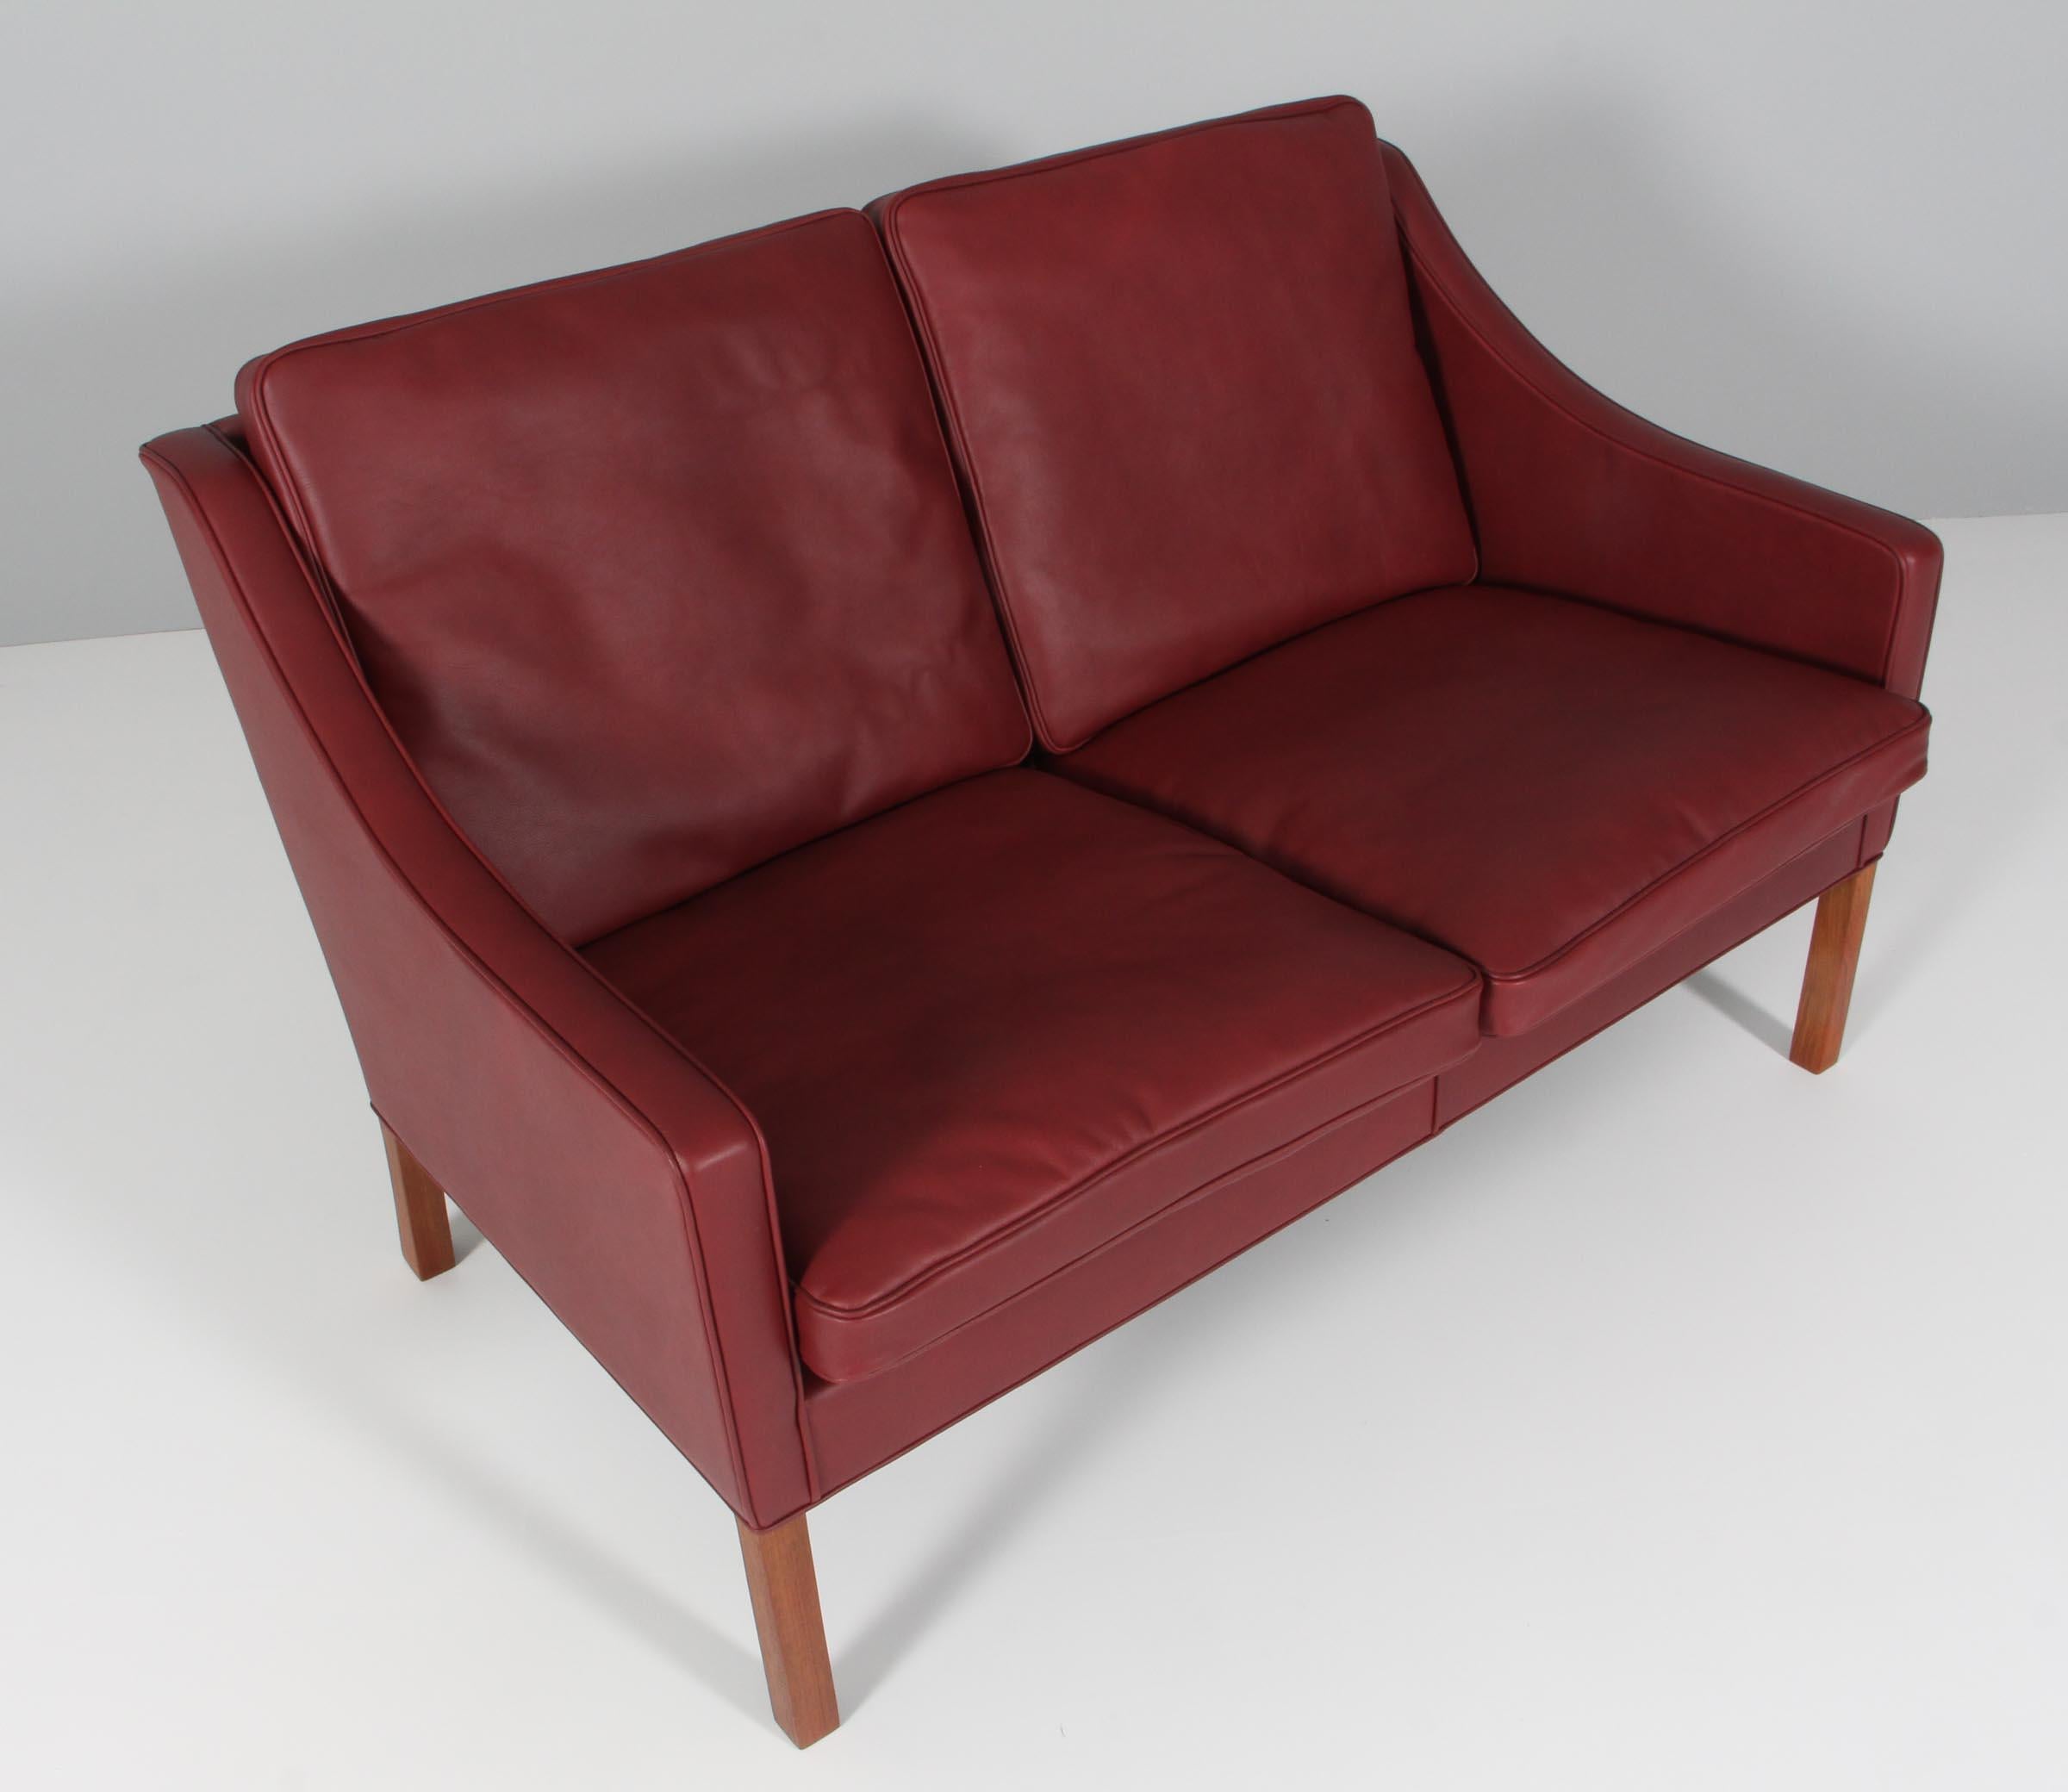 Børge Mogensen Zweisitzer-Sofa, neu gepolstert mit indischrotem Anilinleder in Eleganz.

Beine aus Mahagoni.

Modell 2208, hergestellt von Fredericia Möbel.